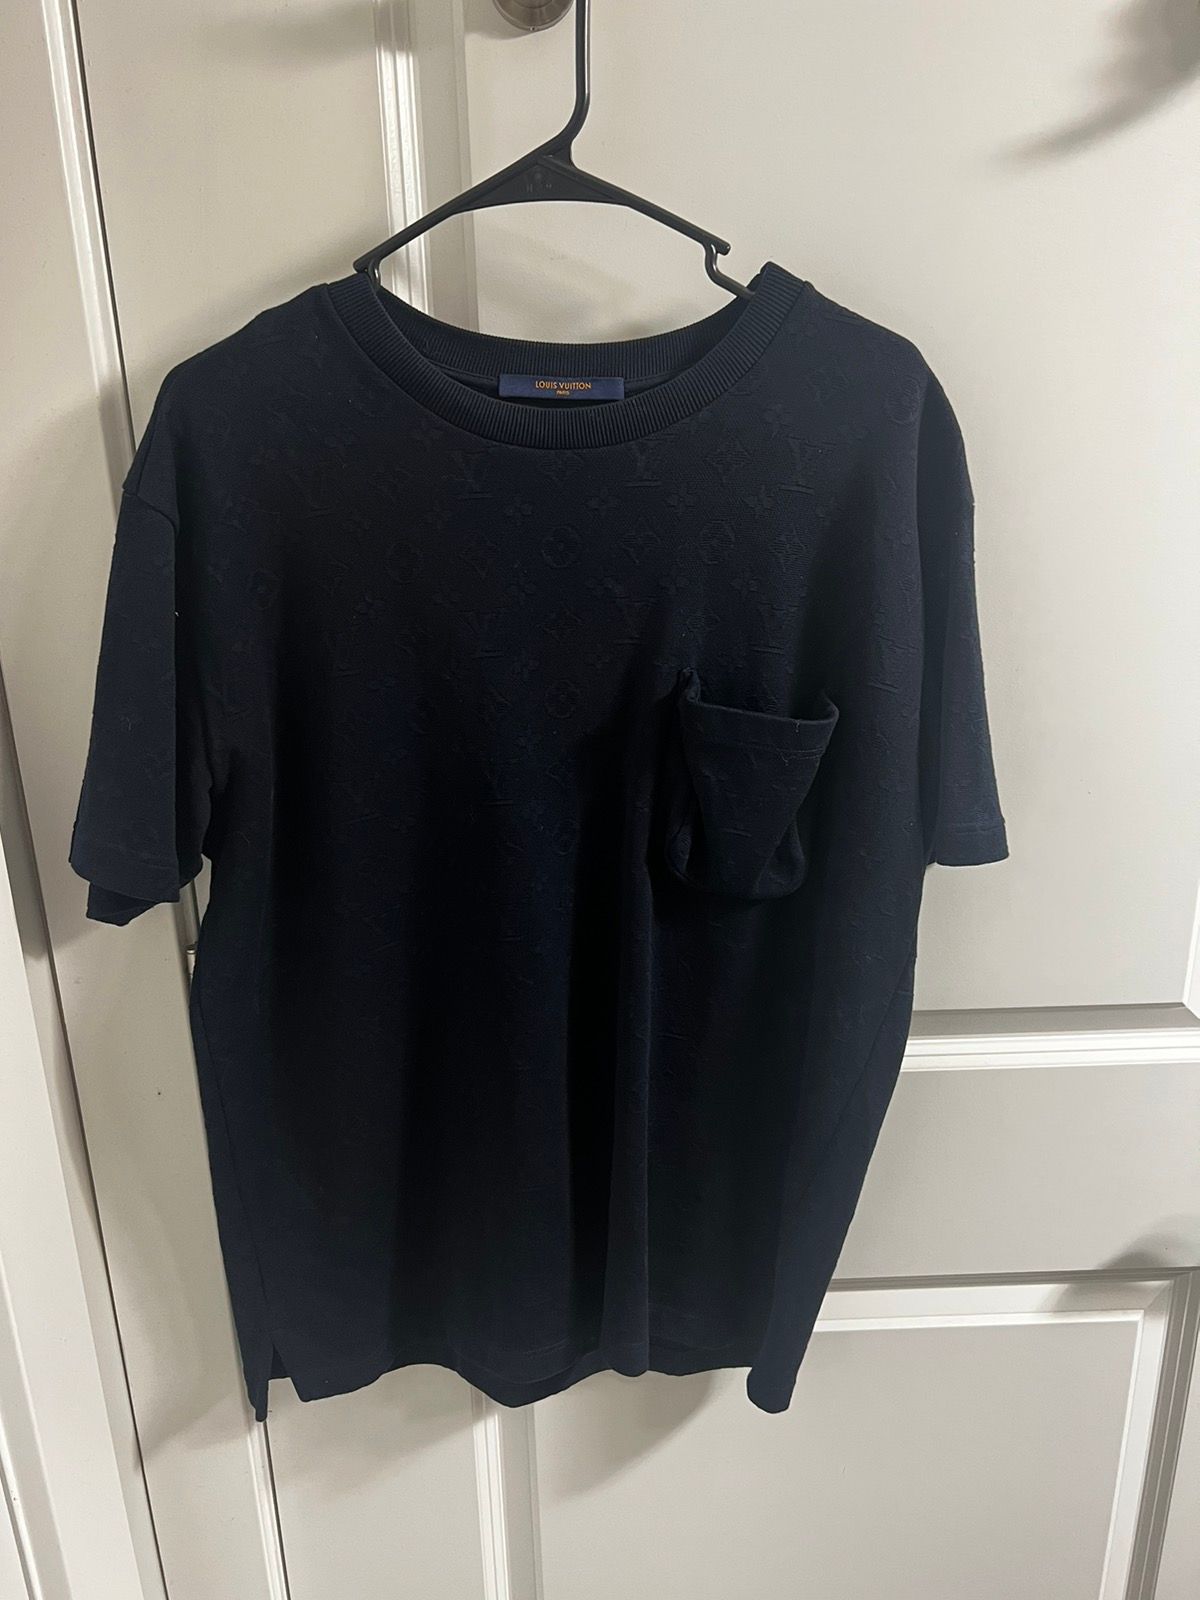 Louis Vuitton 3D Pocket Monogram Cotton T-Shirt Blue. Size S0